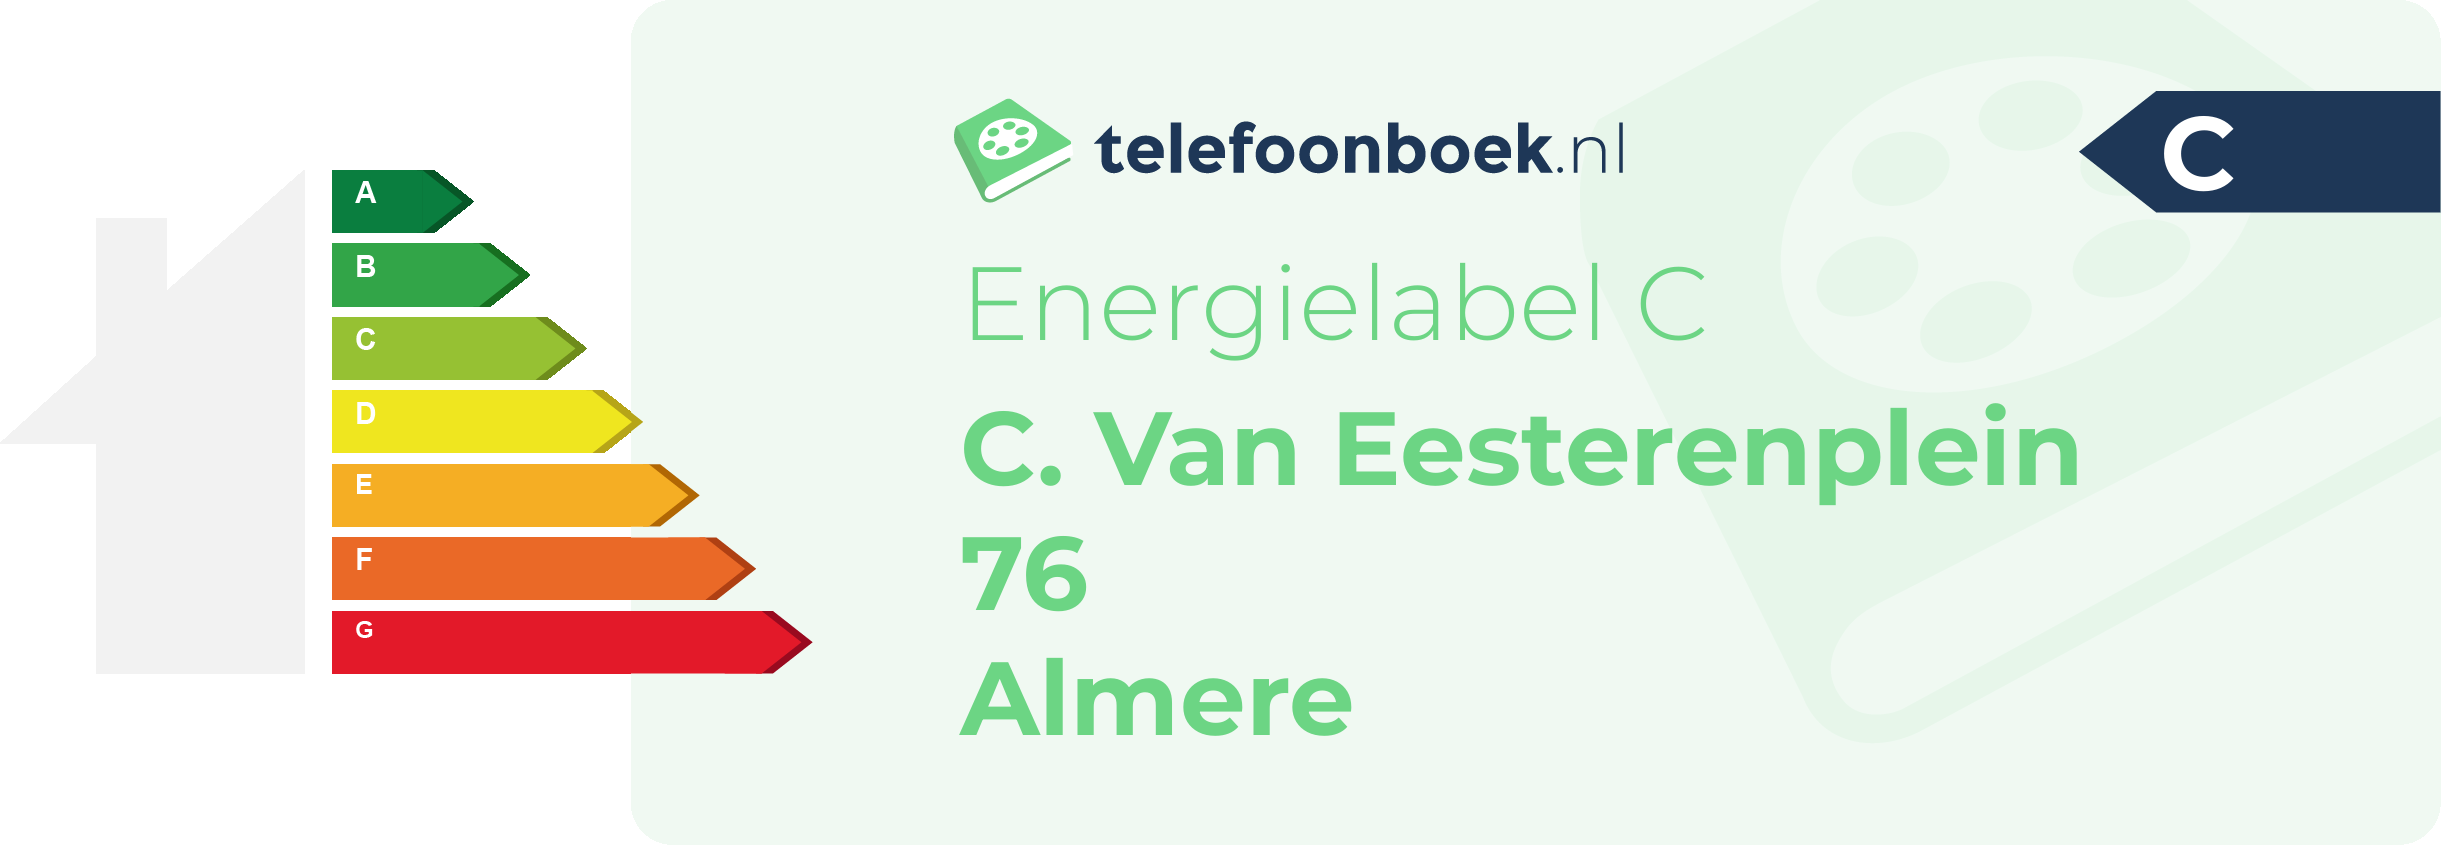 Energielabel C. Van Eesterenplein 76 Almere